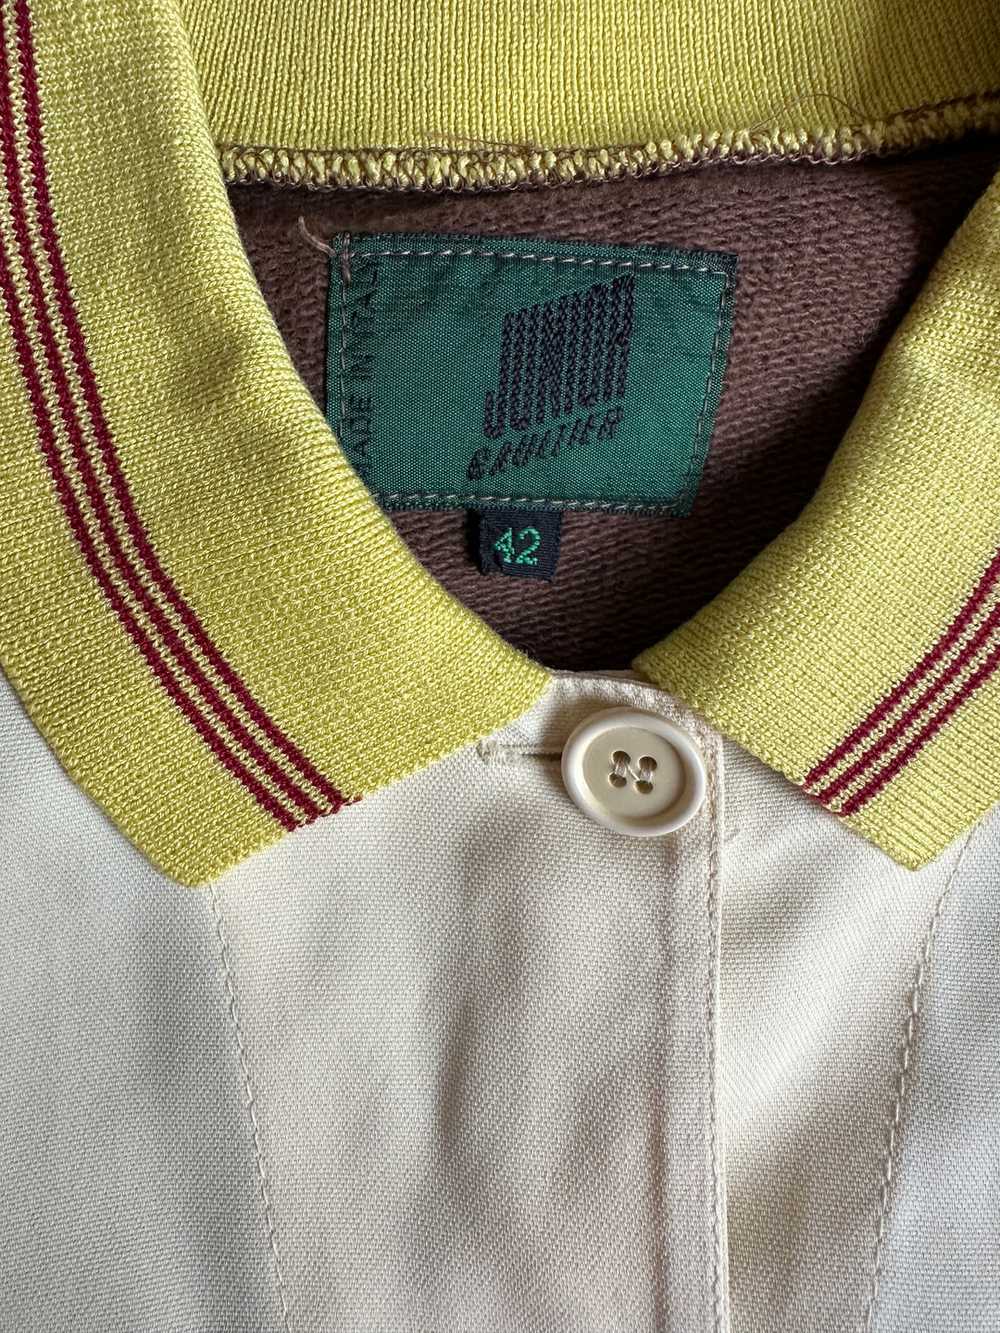 1980s Junior Gaultier jacket - image 5